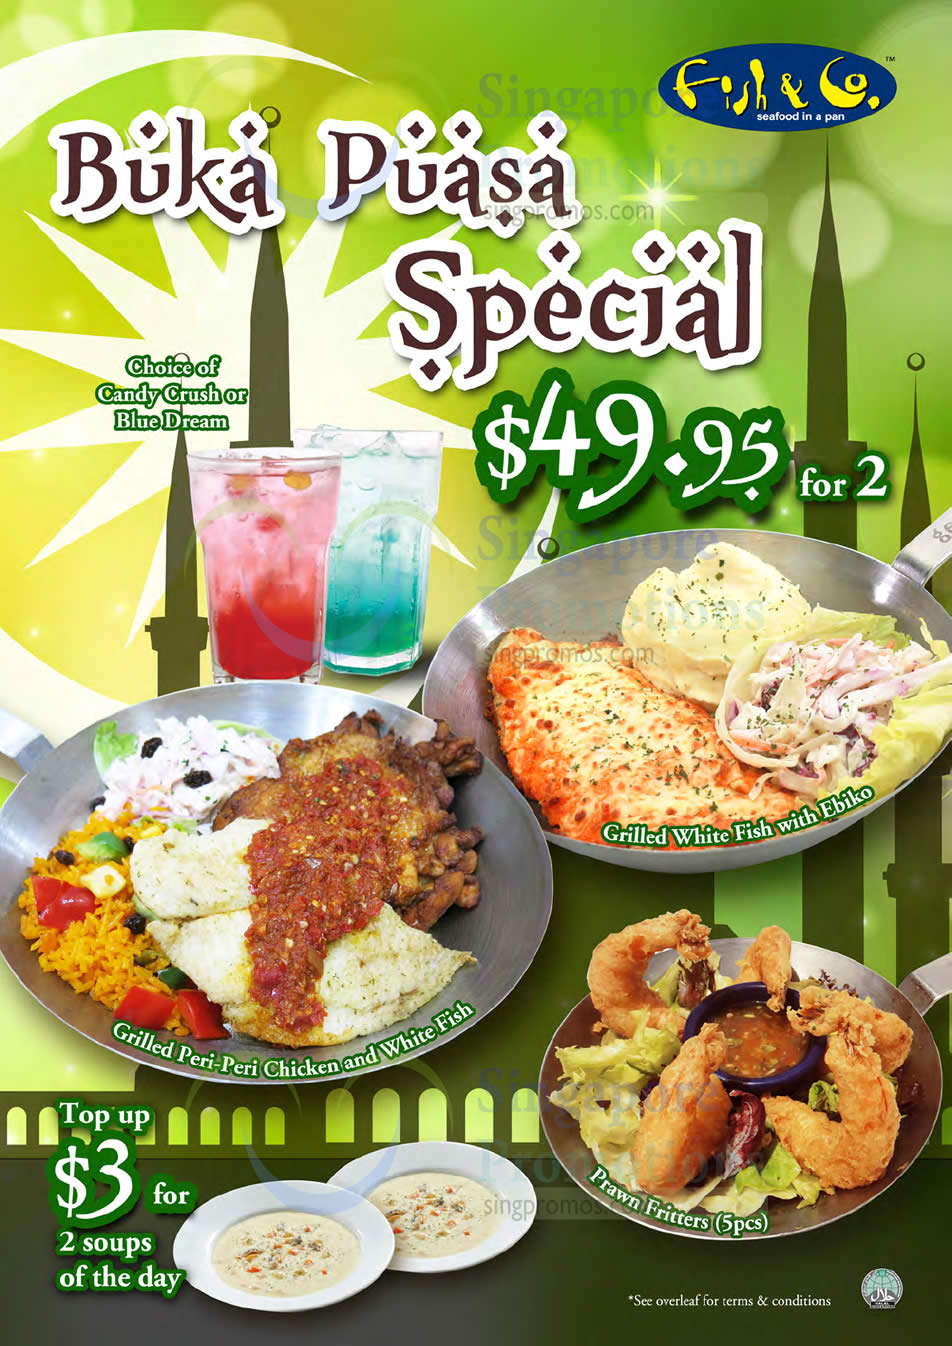 Buka Puasa Special » Fish & Co Buka Puasa Ramadhan Special 18 Jun – 17